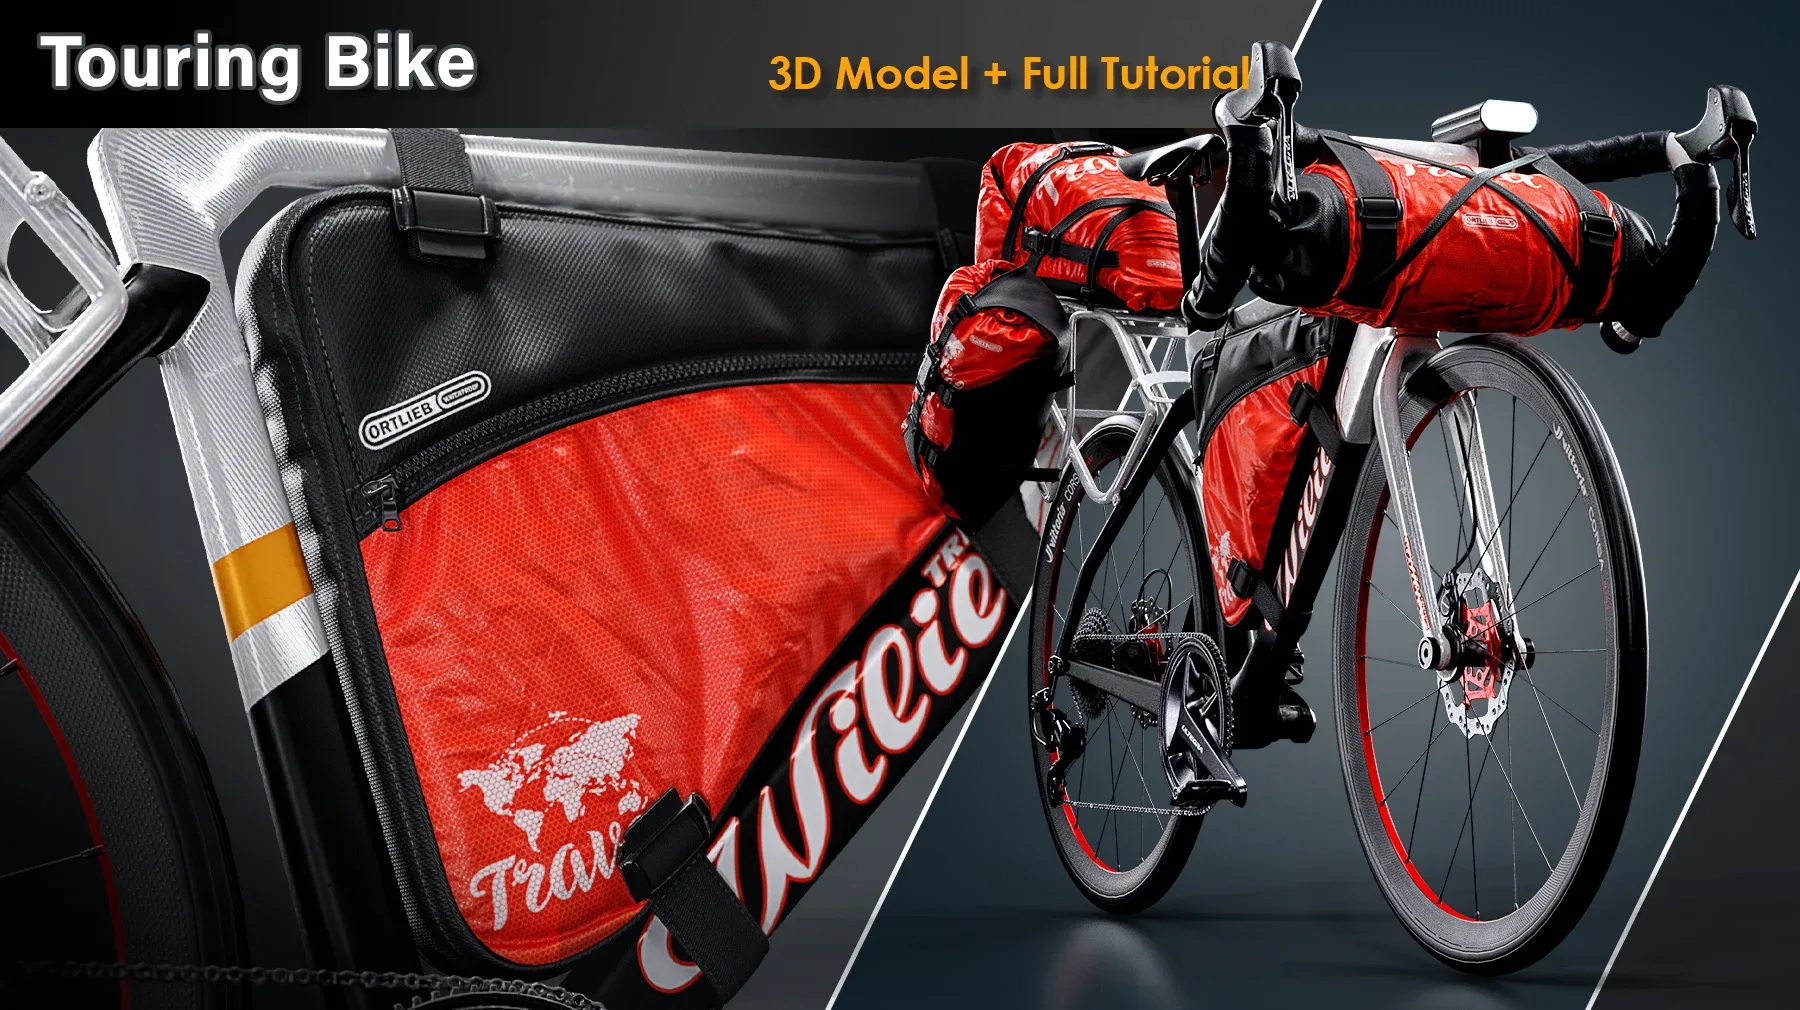 Touring Bike / Full Tutorial + 3D Model